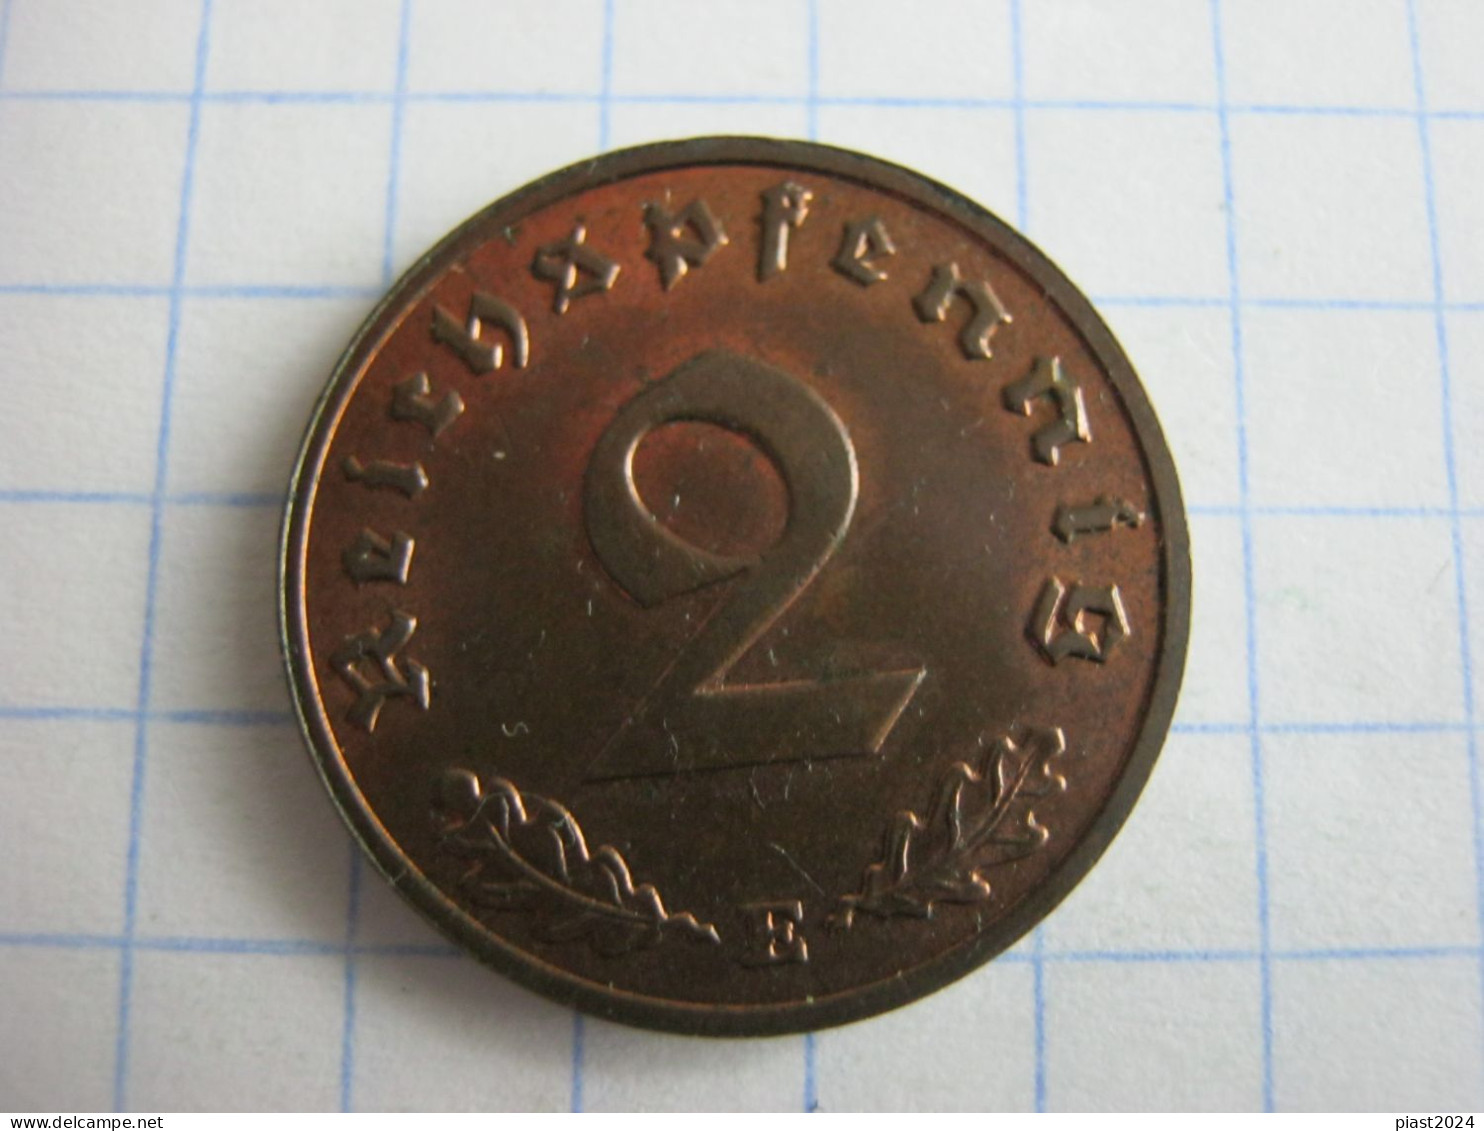 Germany 2 Reichspfennig 1939 E - 2 Reichspfennig